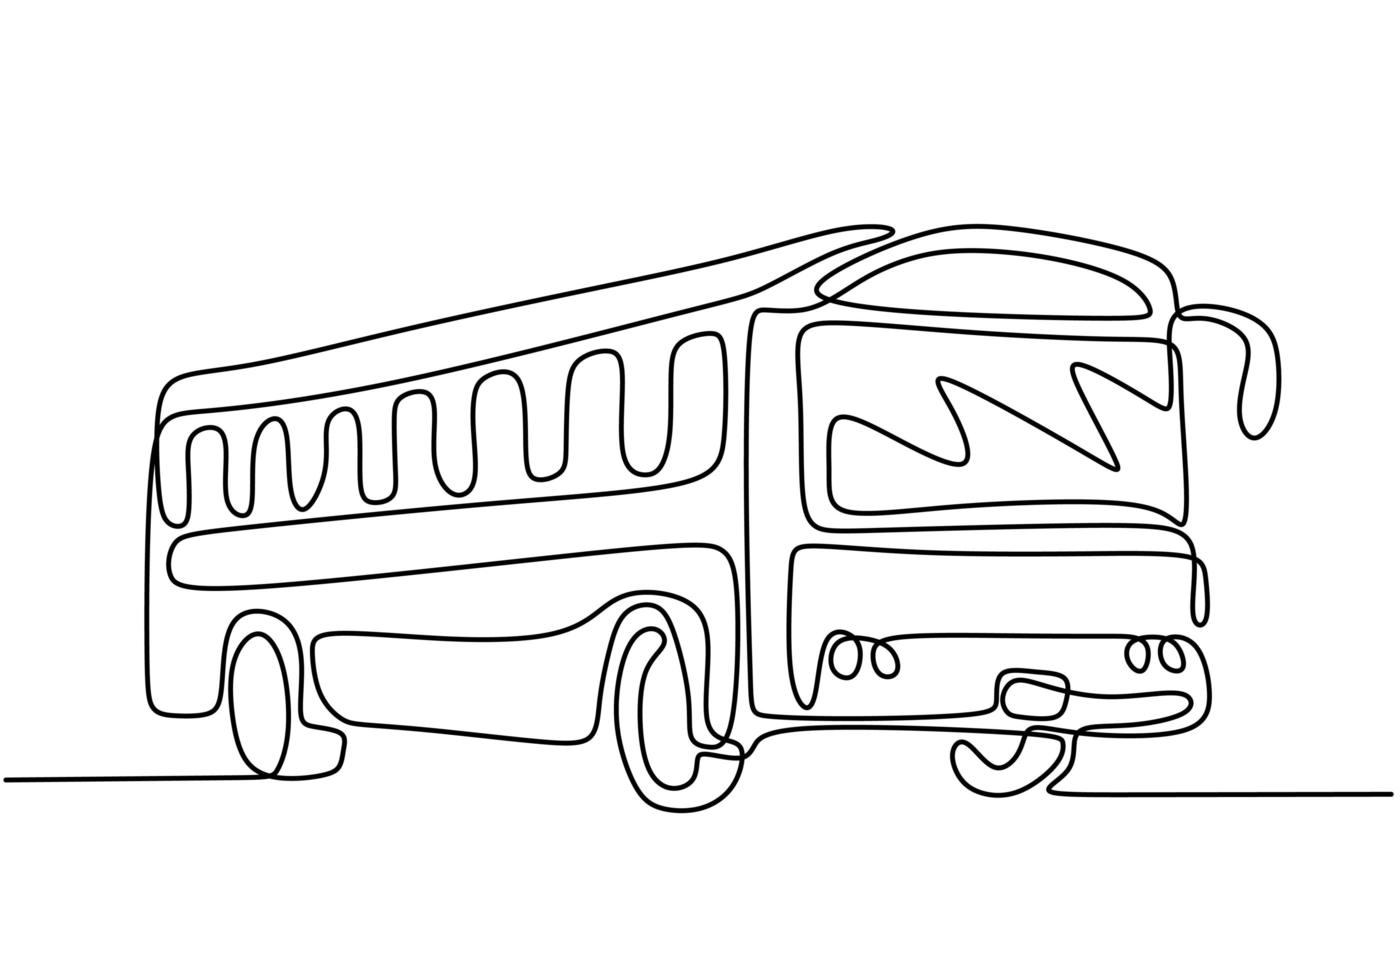 eine Strichzeichnung des Schulbusses. regelmäßig verwendet, um Studenten zu transportieren. vektor